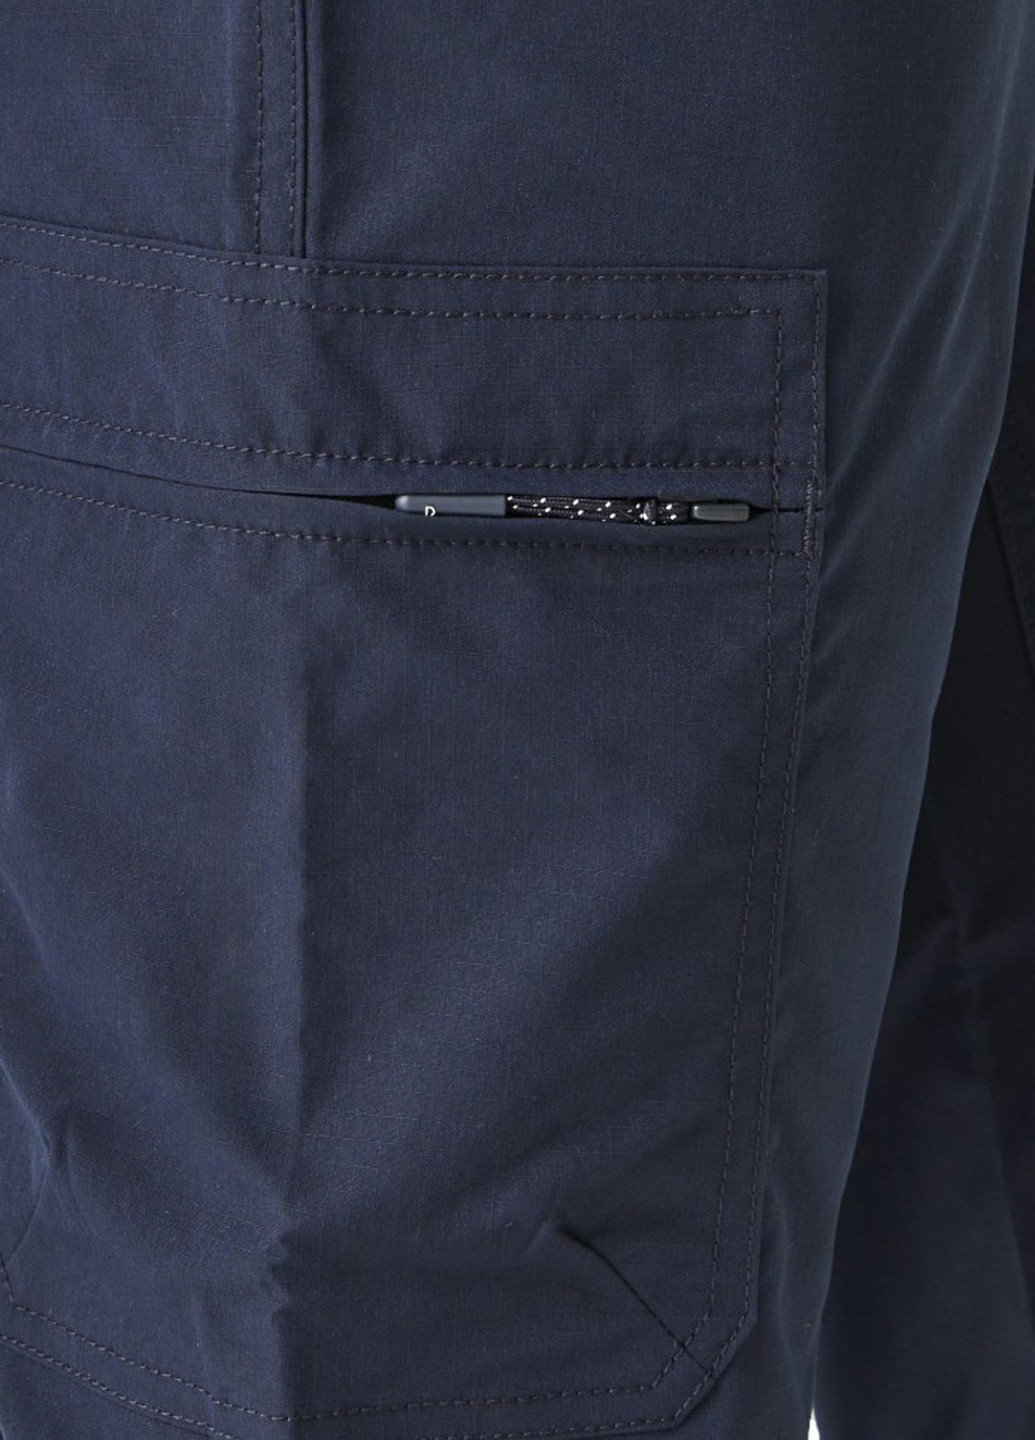 Темно-синие спортивные, кэжуал летние карго брюки Regatta